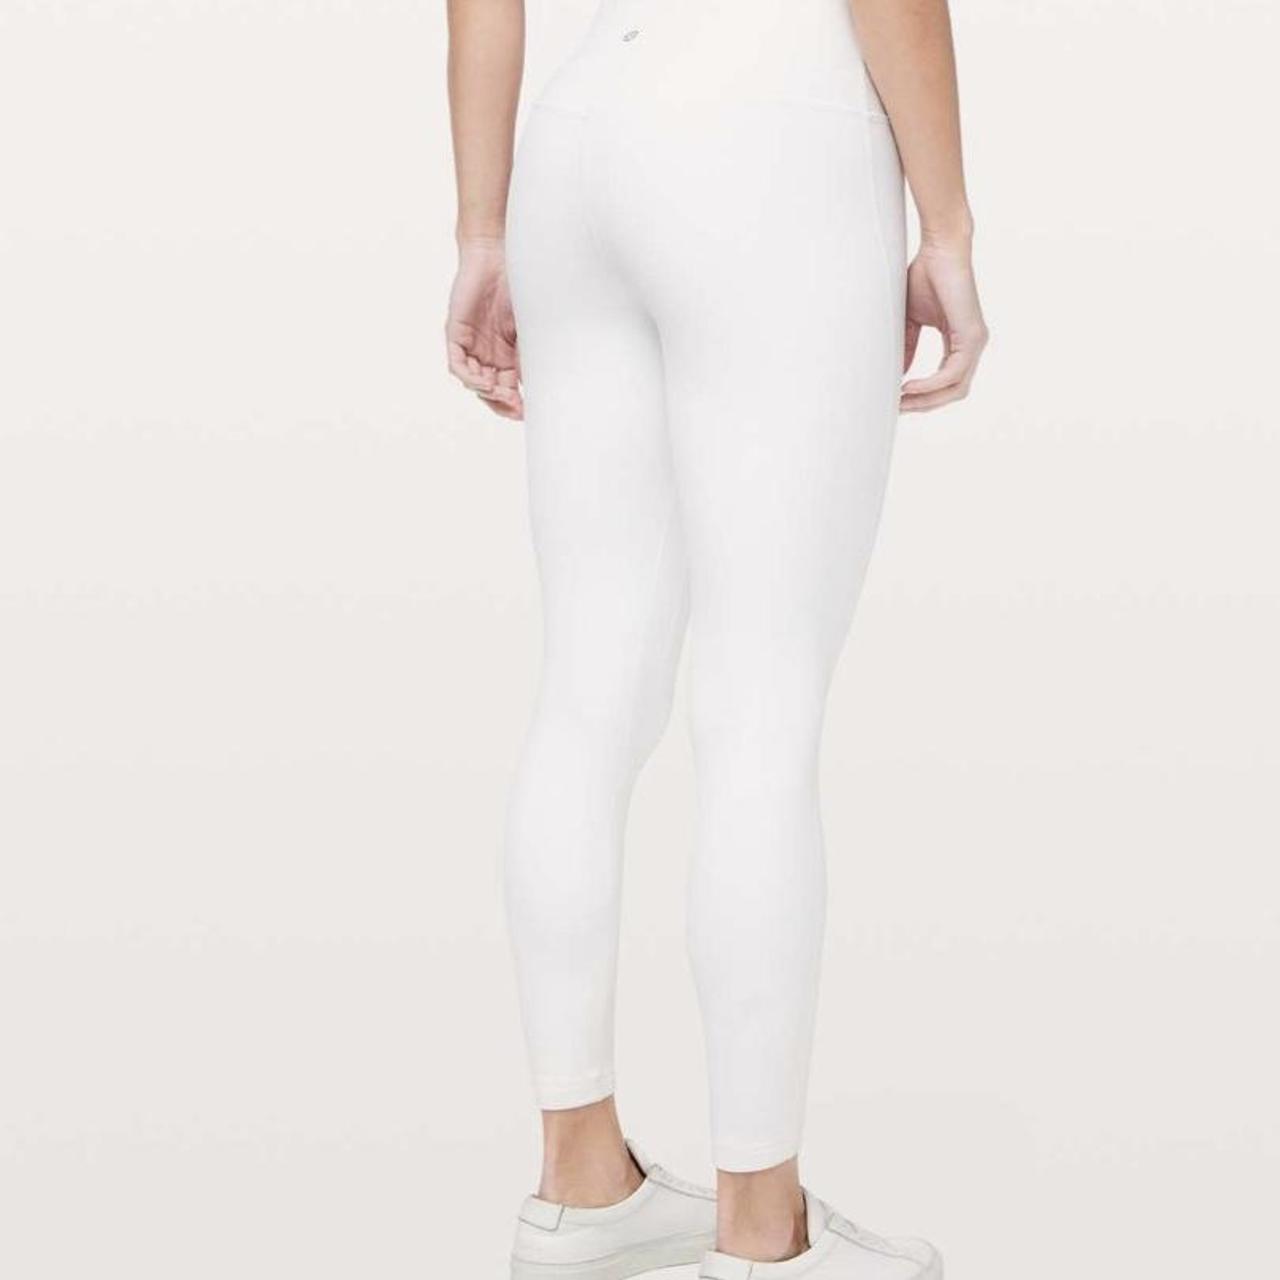 white lululemon align leggings 25' size 2 only worn - Depop